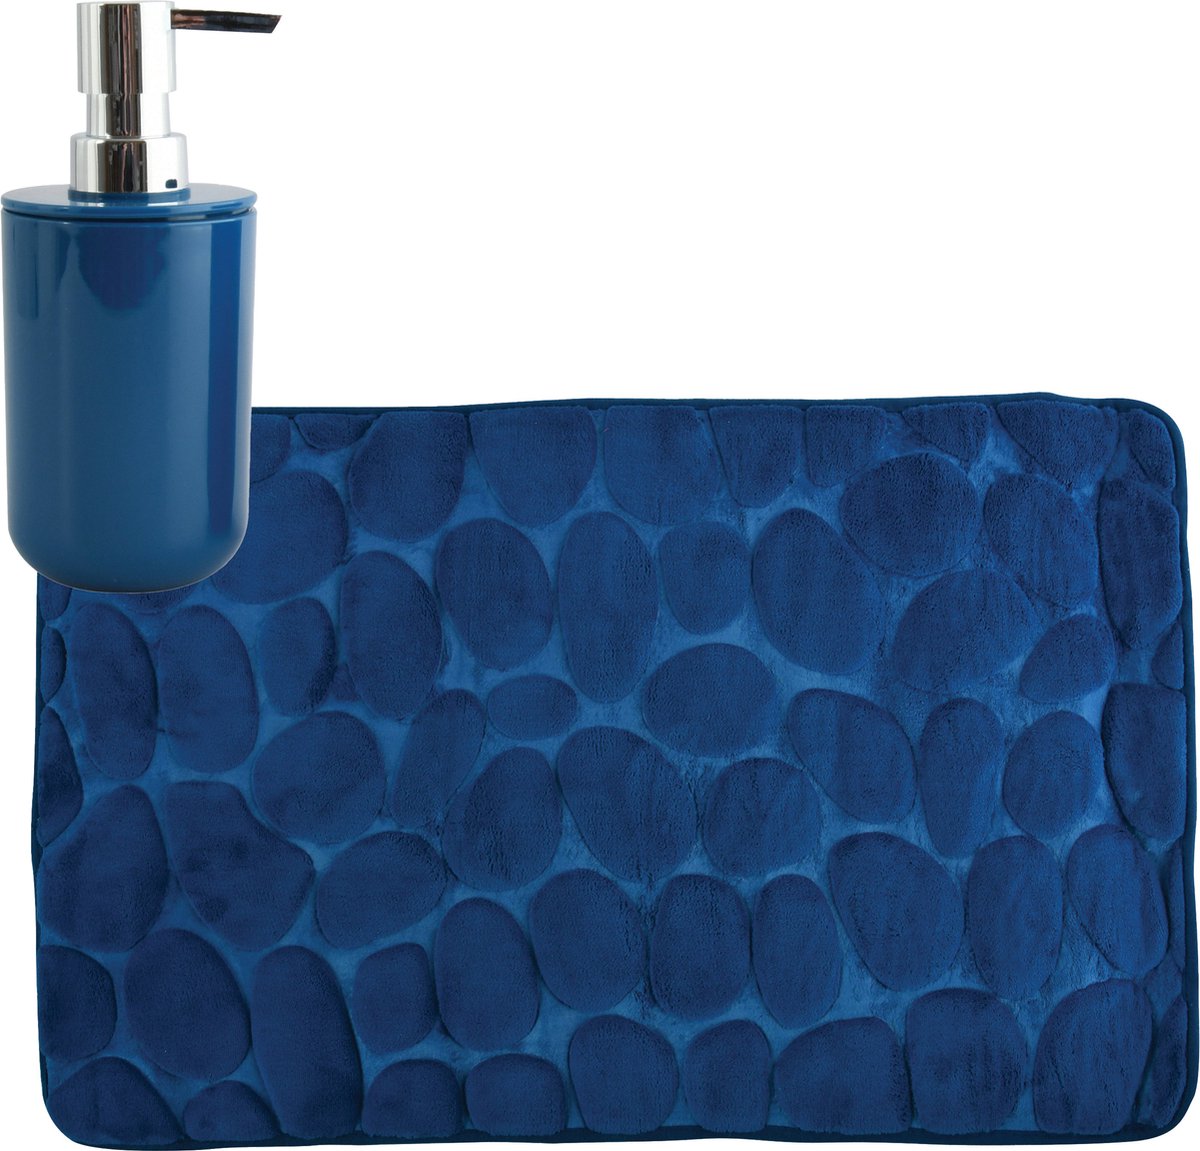 MSV badkamer droogloop mat tapijt Kiezel motief 50 x 80 cm zelfde kleur zeeppompje 260 ml donkerblauw